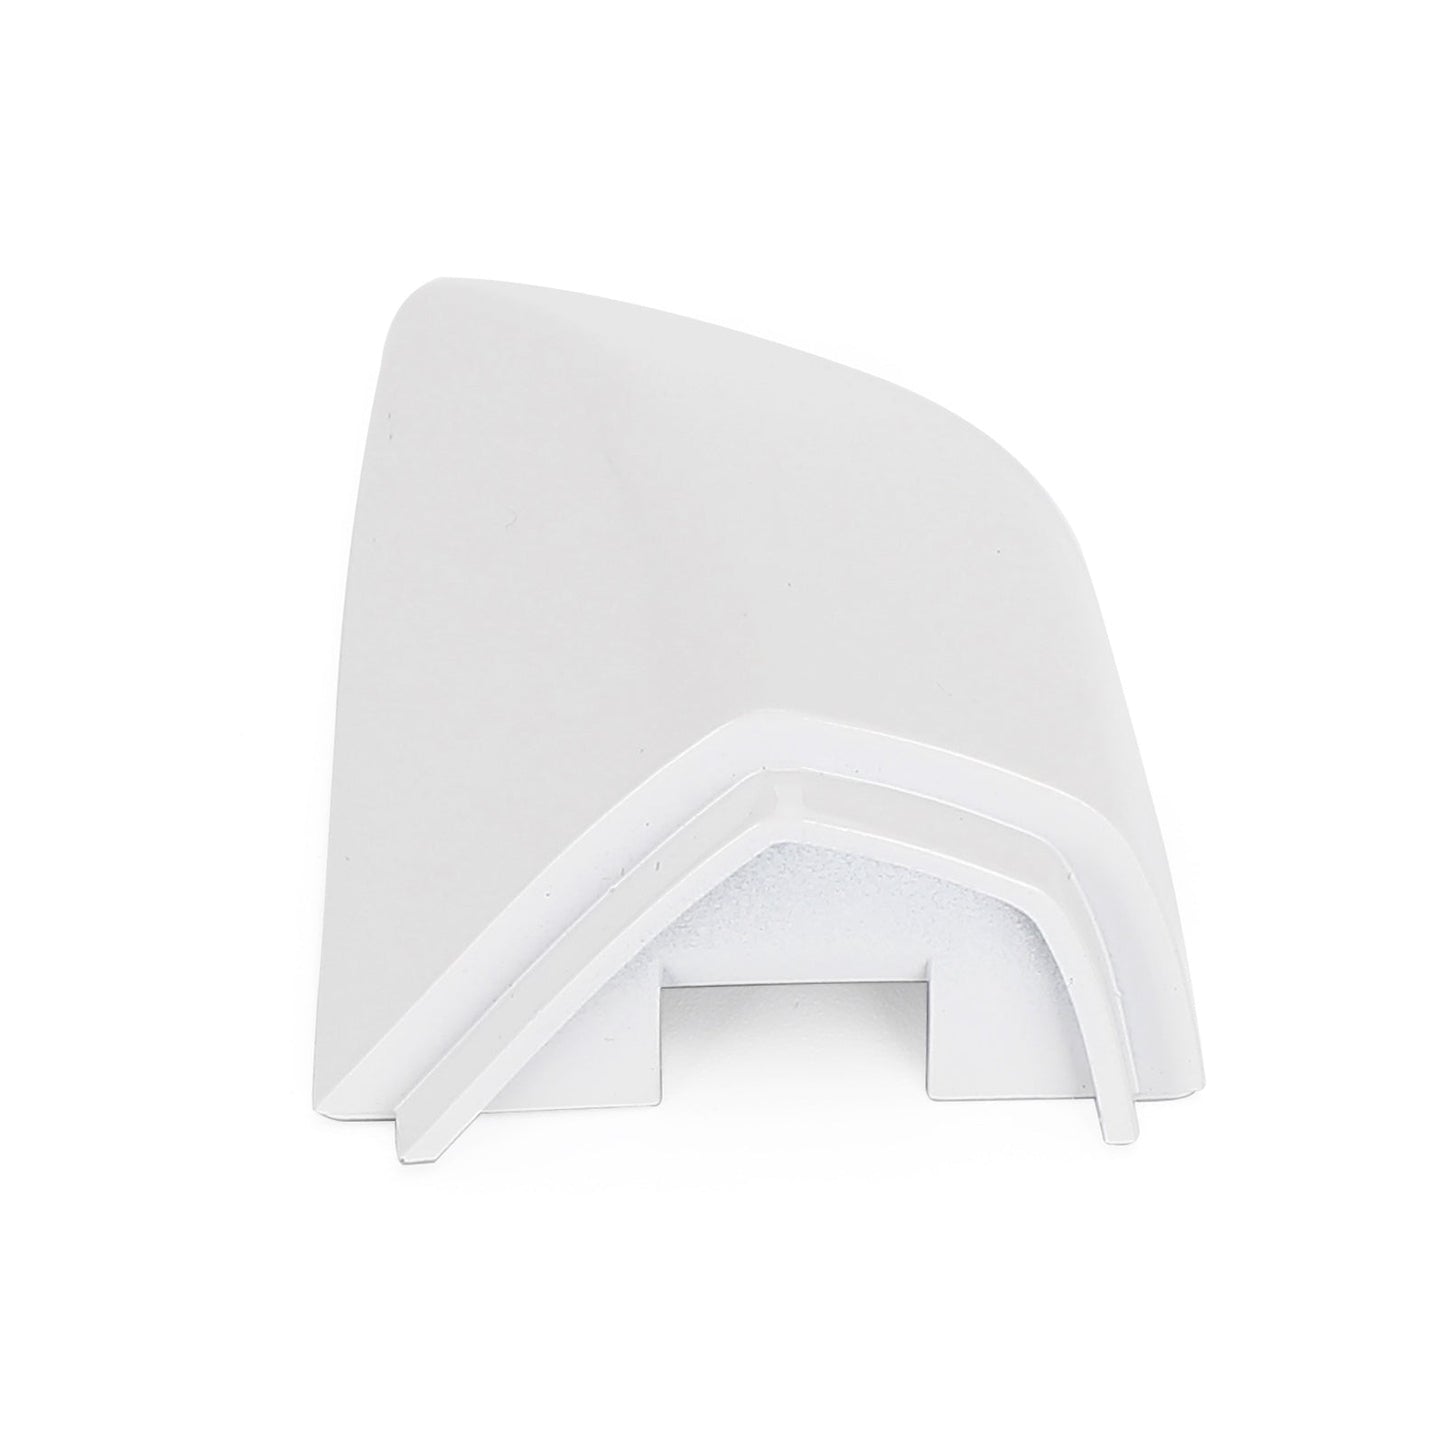 1K8837879 White Left Door Handle Cap Cover For VW Golf Scirocco 2009-2016